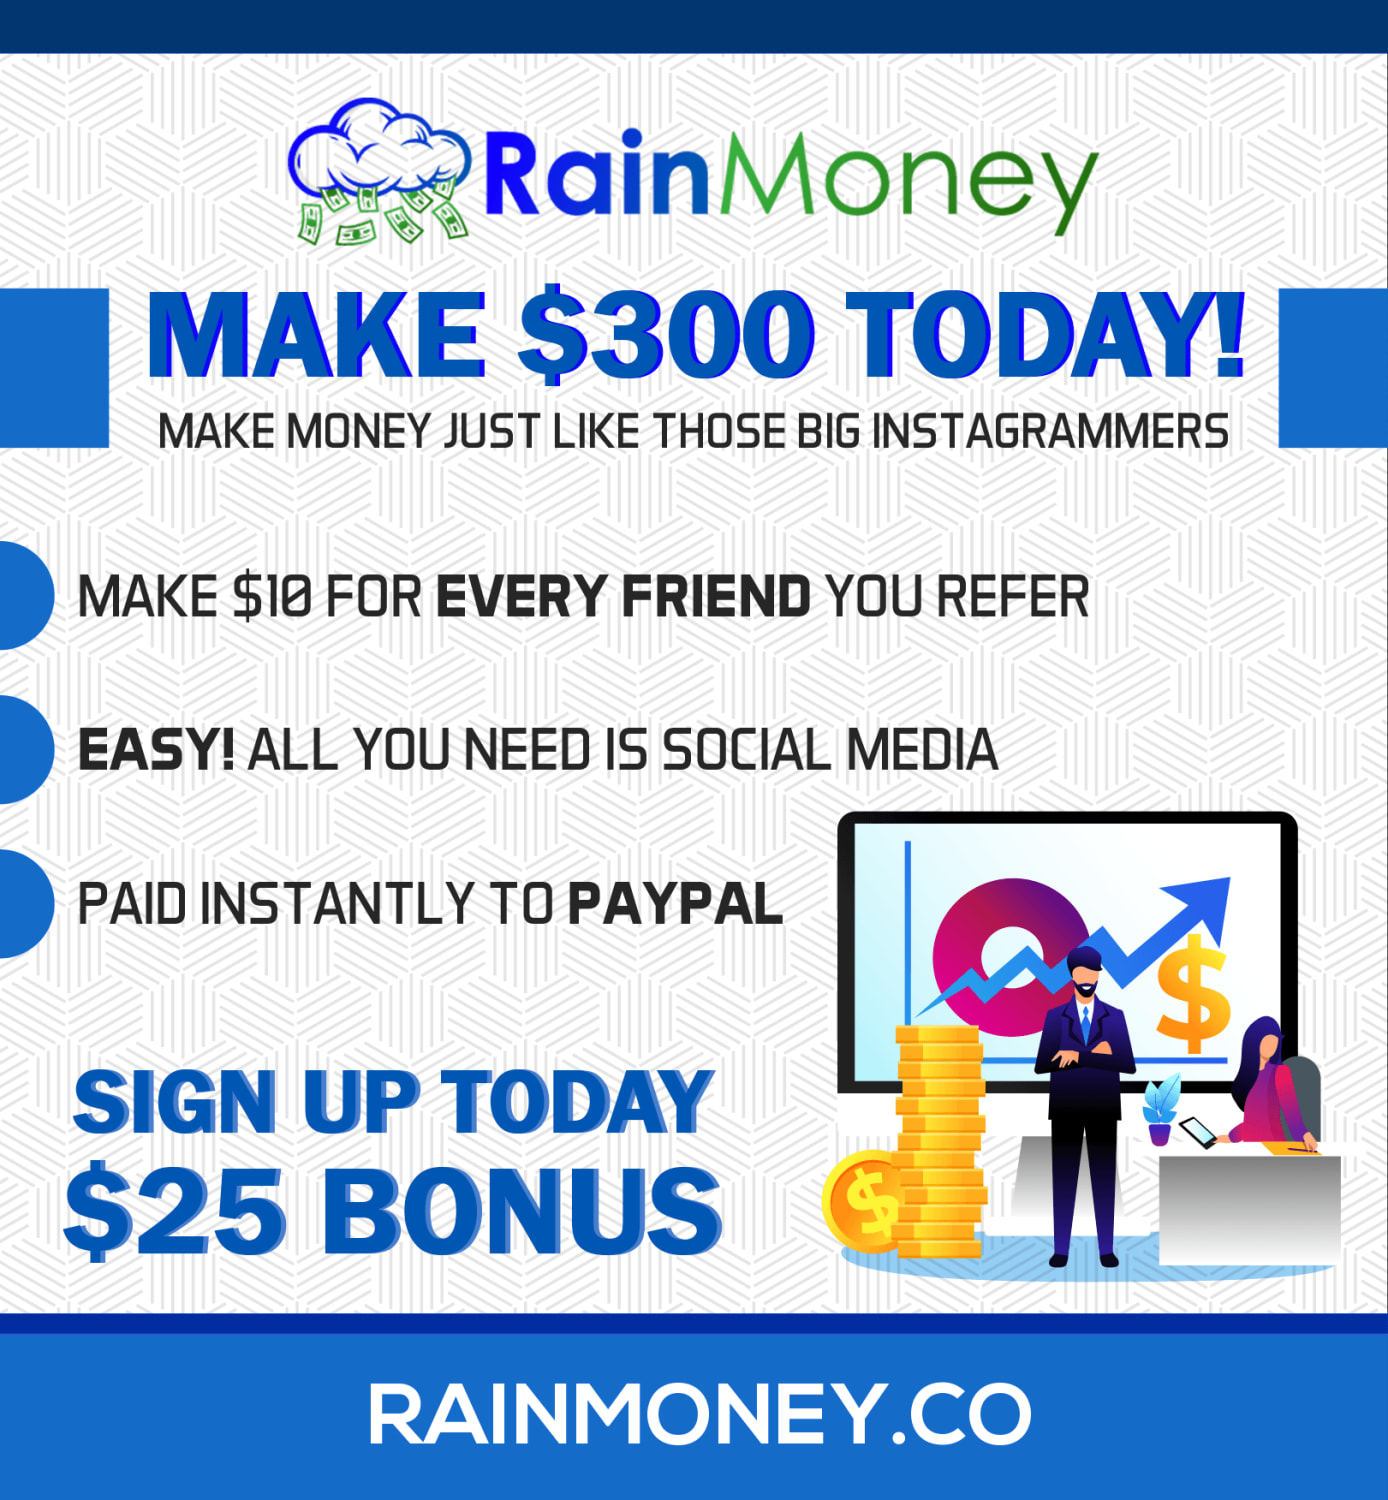 Monetize Your Social Media & Make Money Rain